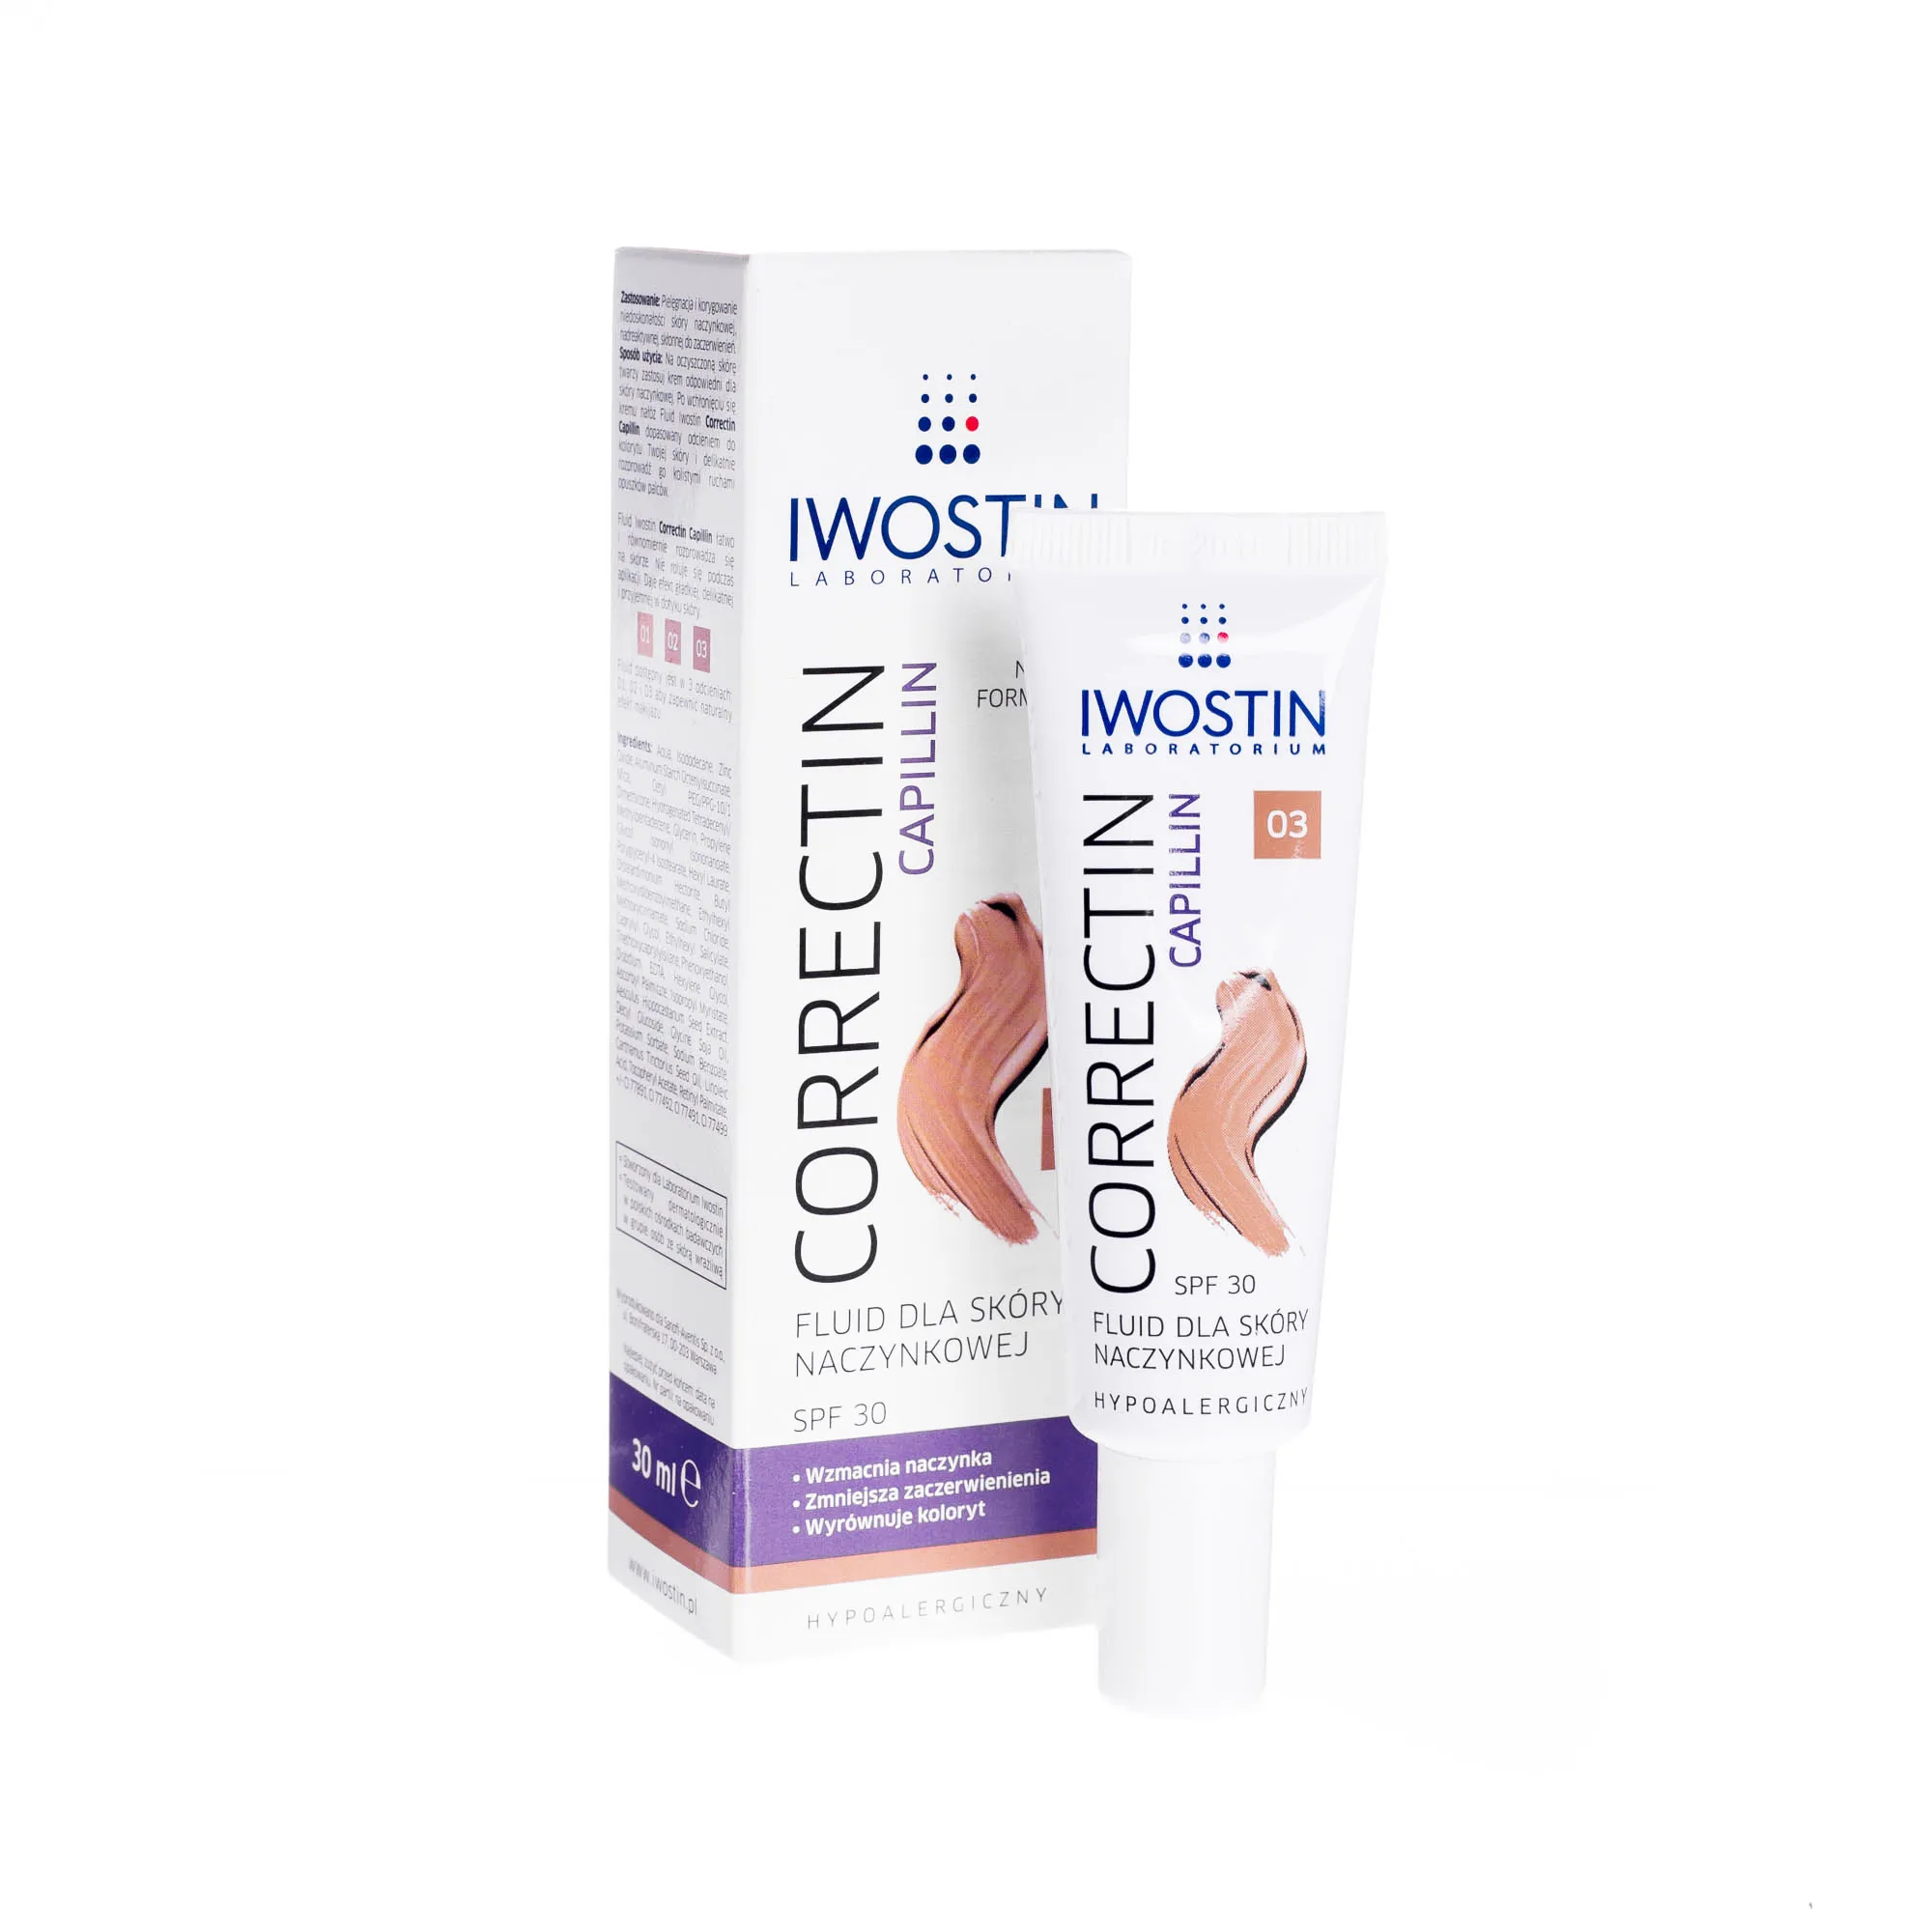 Iwostin Correctin Capillin fluid dla skóry naczynkowej 03 / SPF 30 / 30 ml